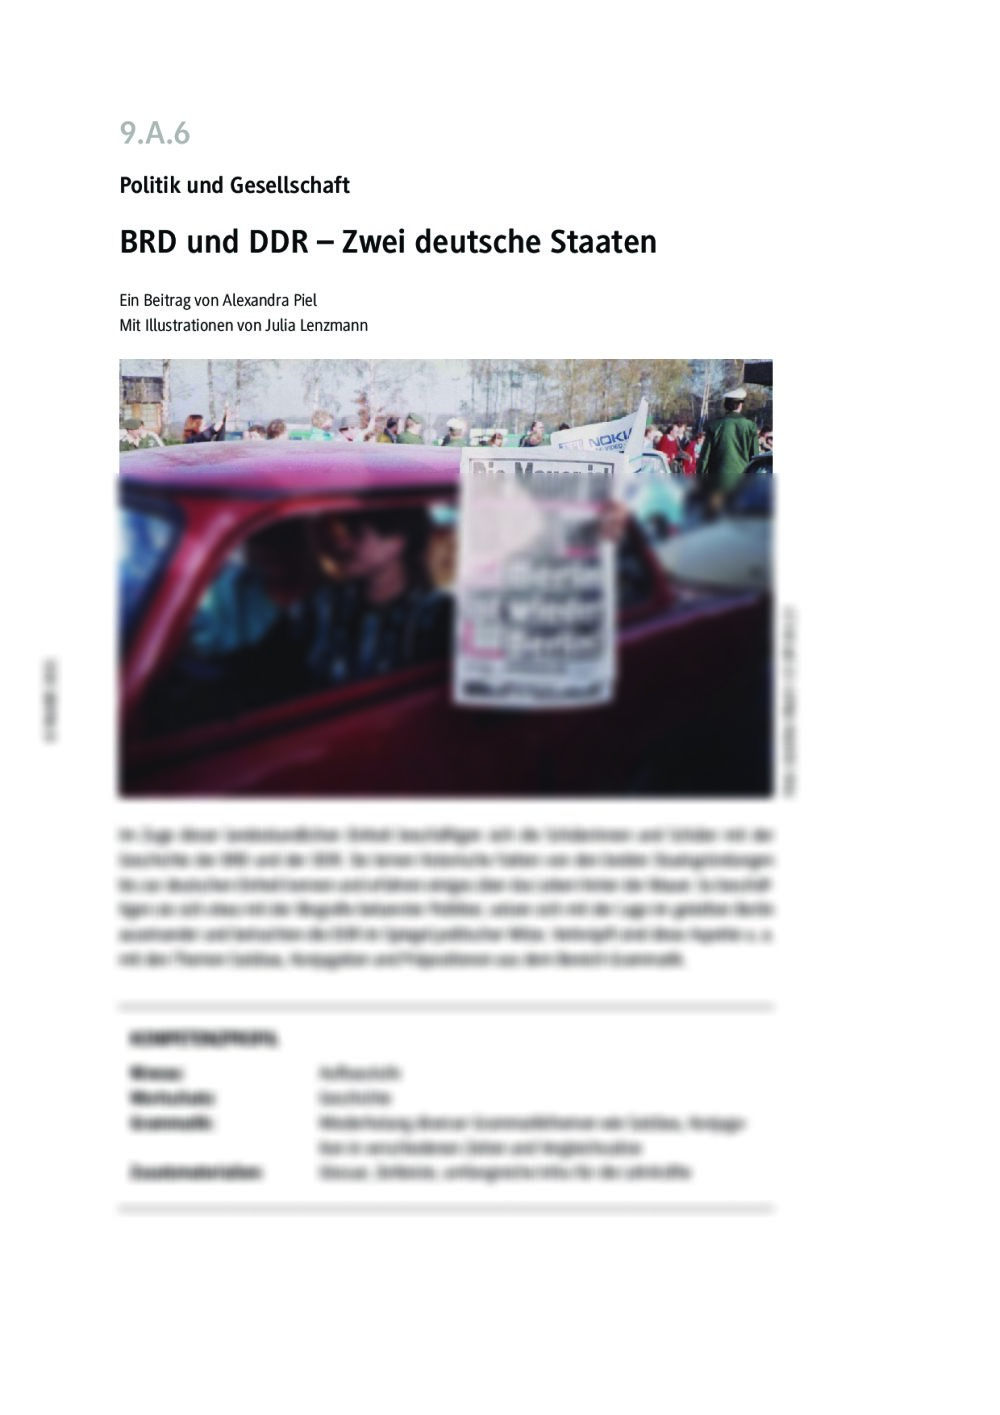 BRD und DDR - Seite 1